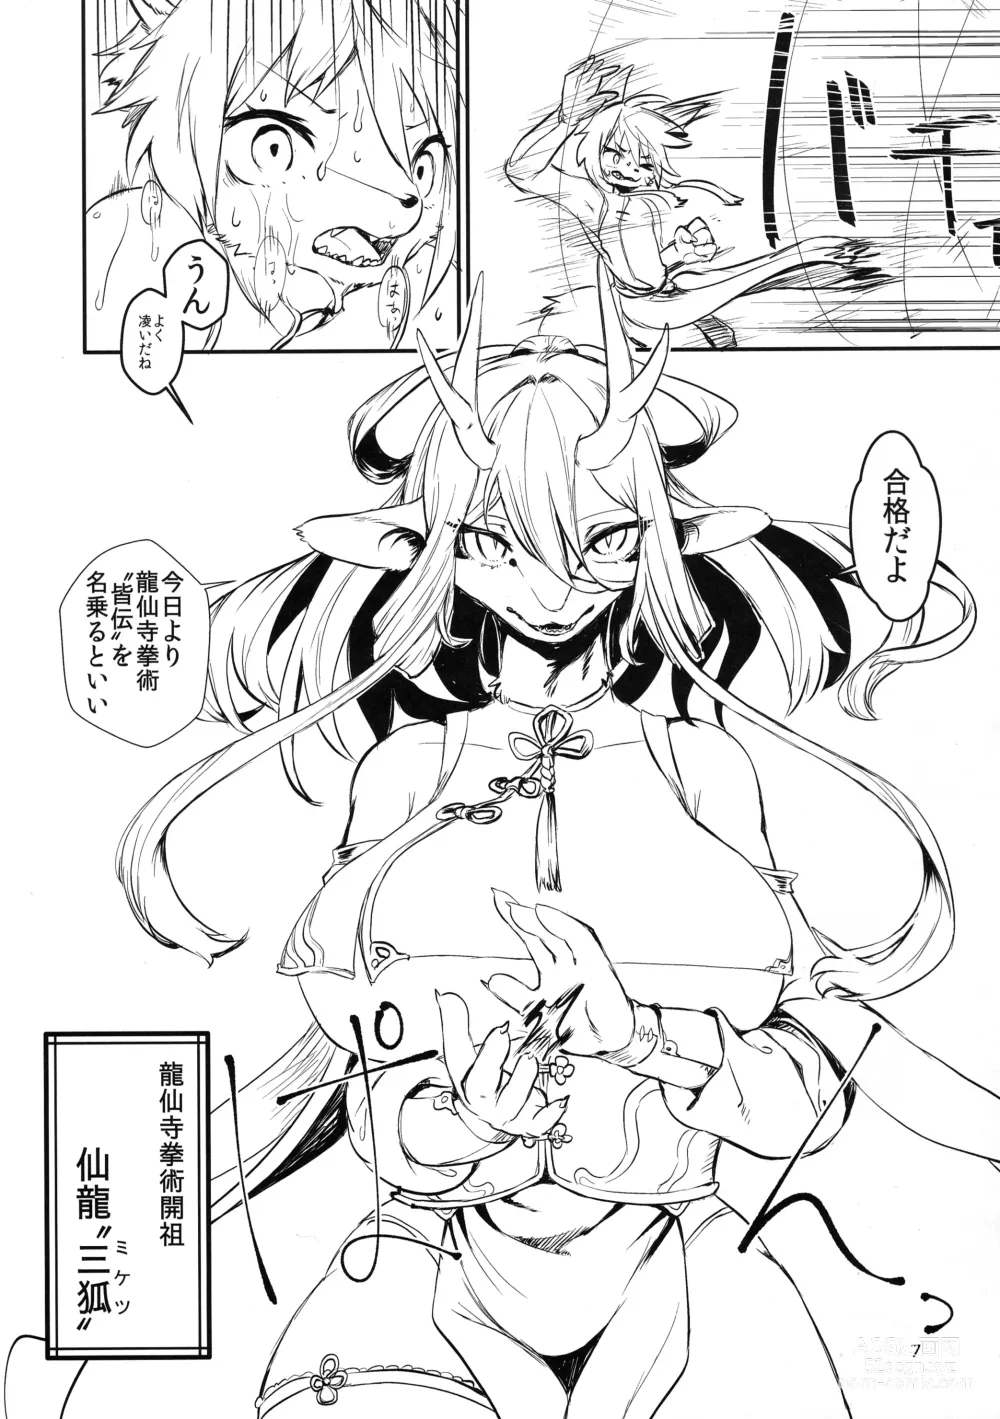 Page 7 of doujinshi Kyosei Yukoku ni Kaoru